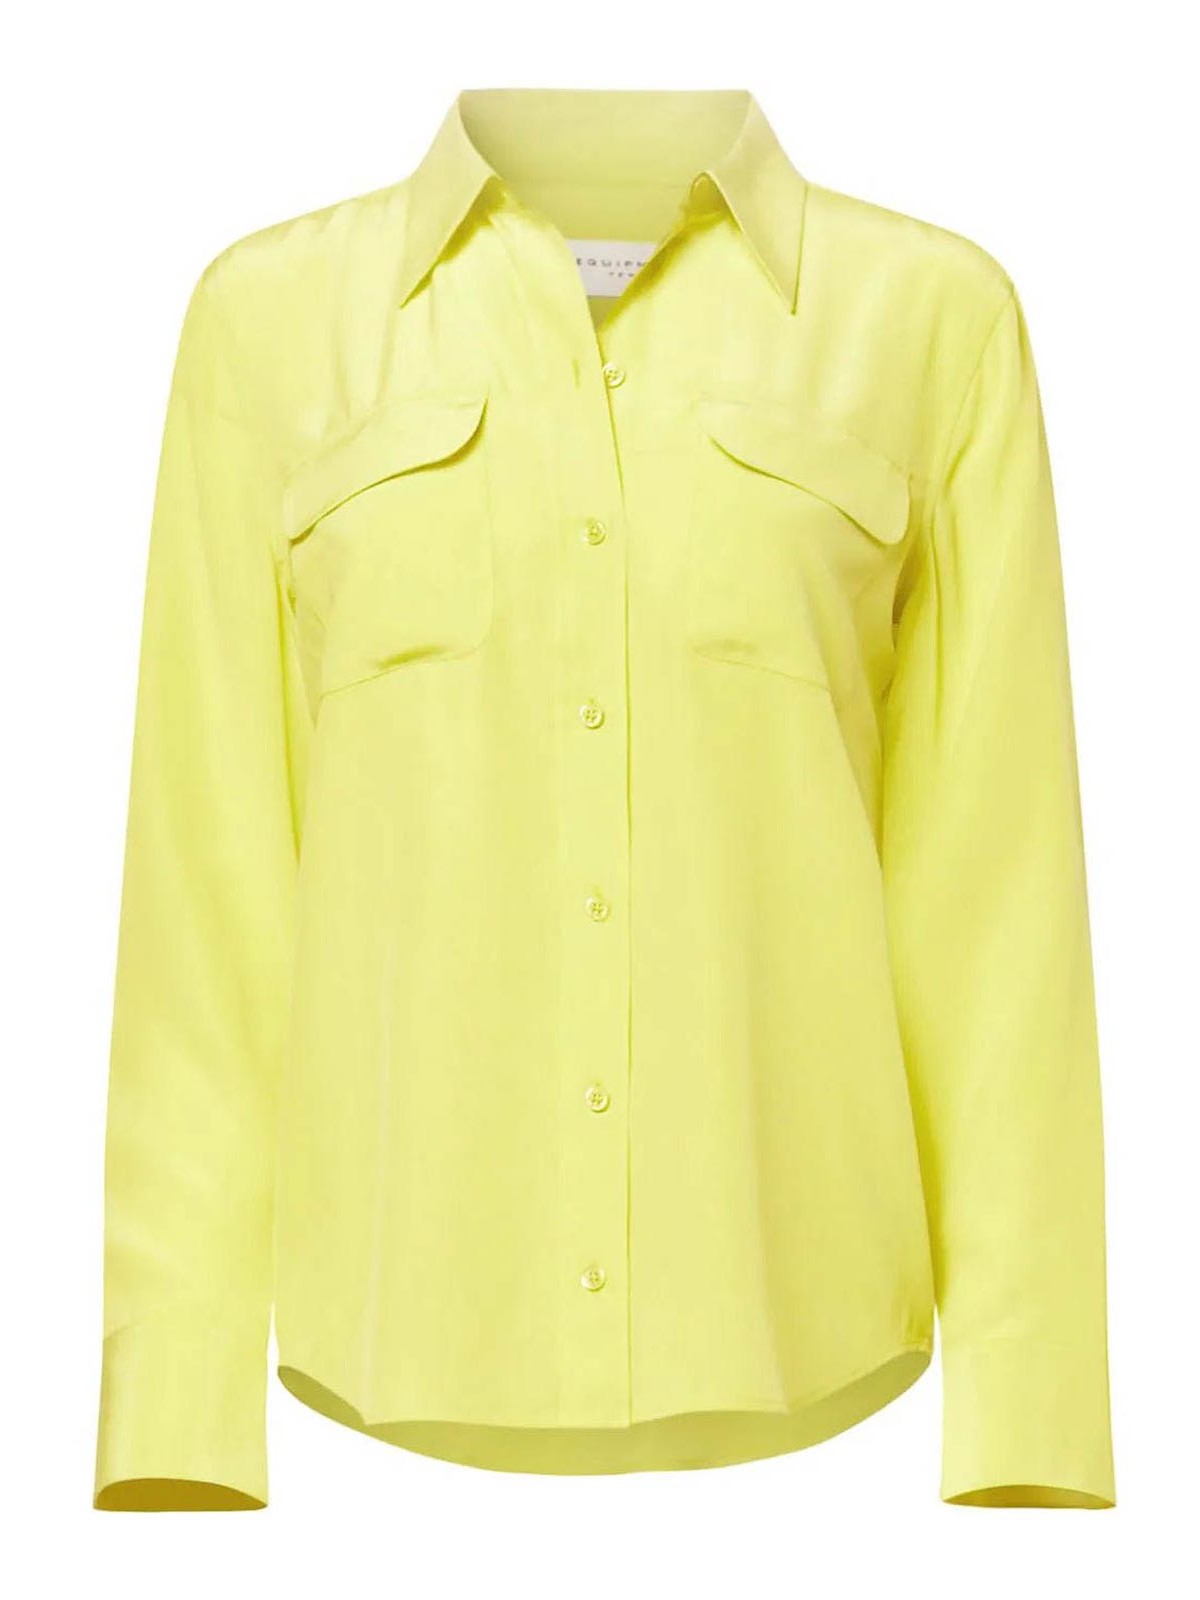 Equipment Silk Shirt In Yellow